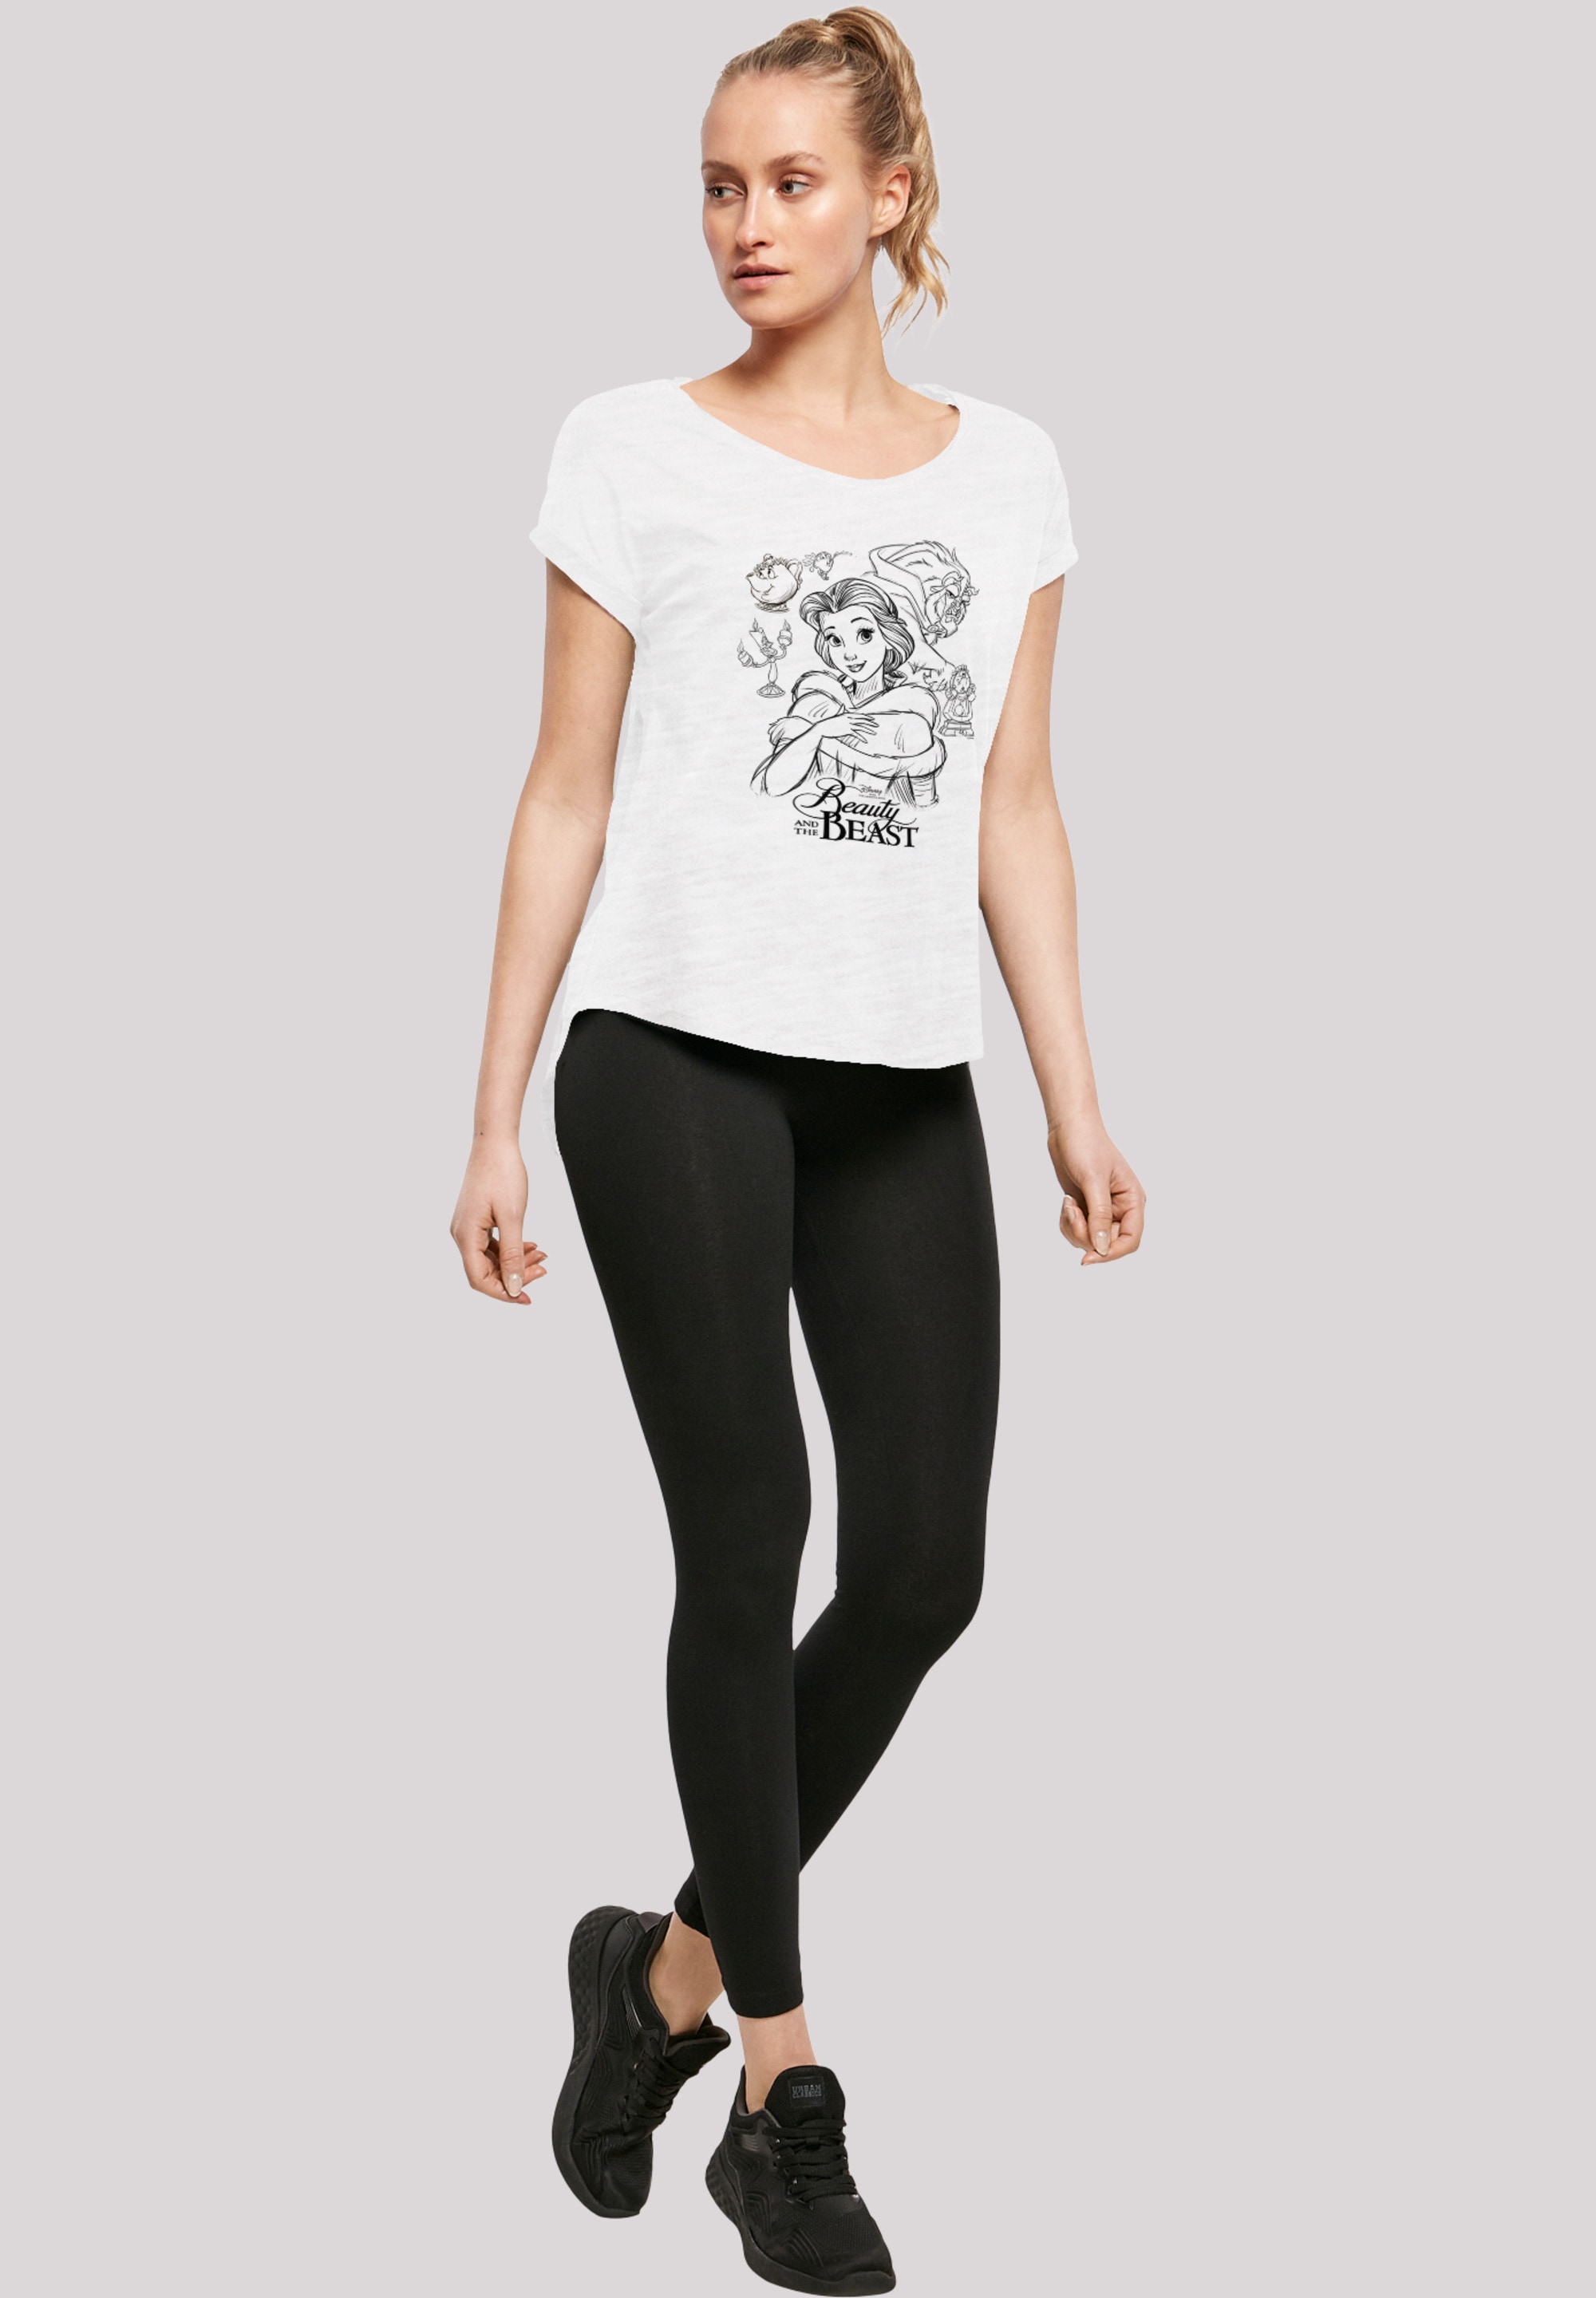 F4NT4STIC T-Shirt Biest Die »Disney kaufen das Schöne Print und Collage Zeichnung«